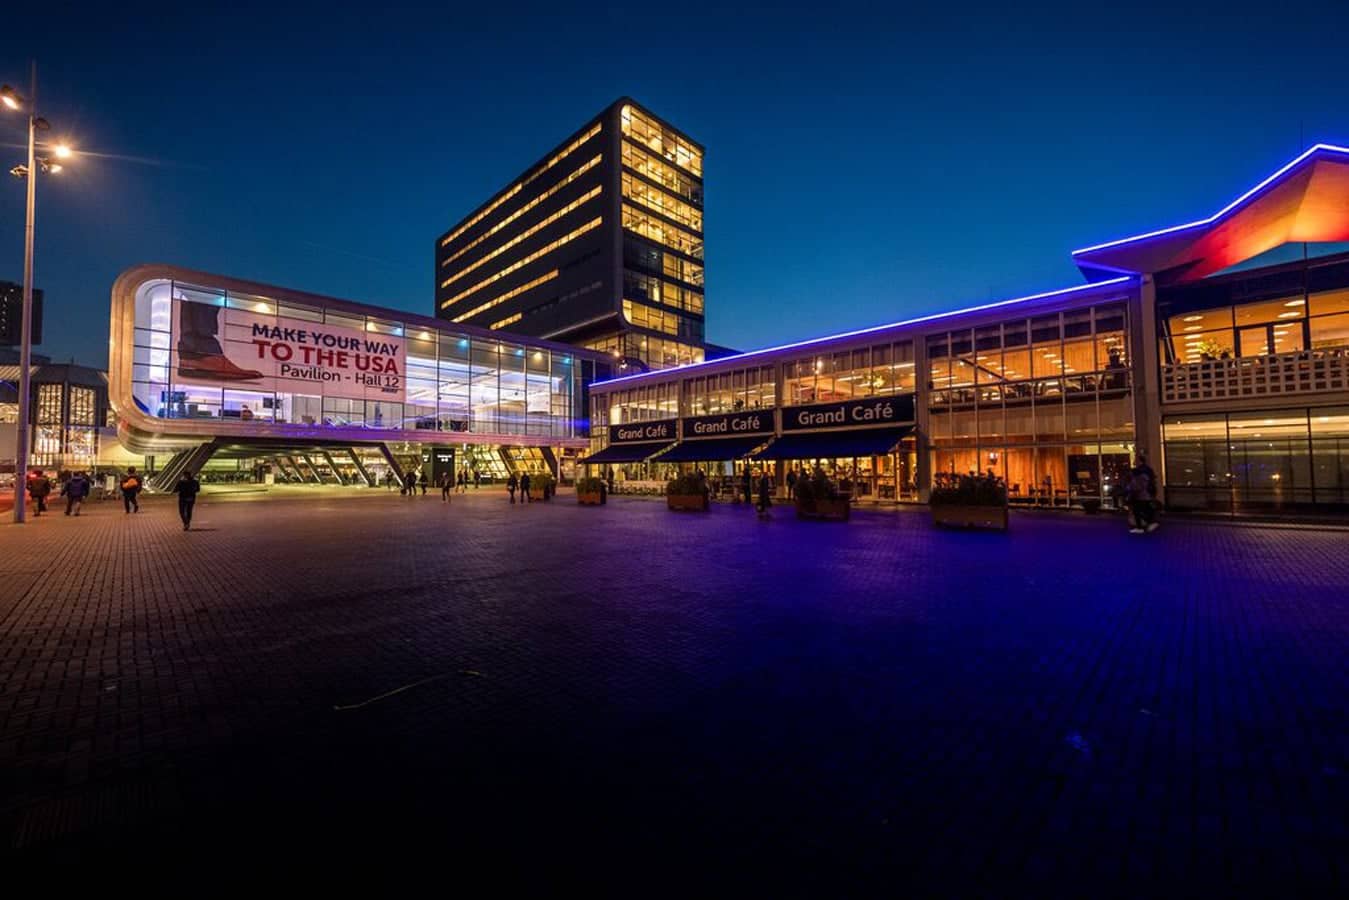 Amsterdam RAI Exhibition and Convention Centre ExpoQuote